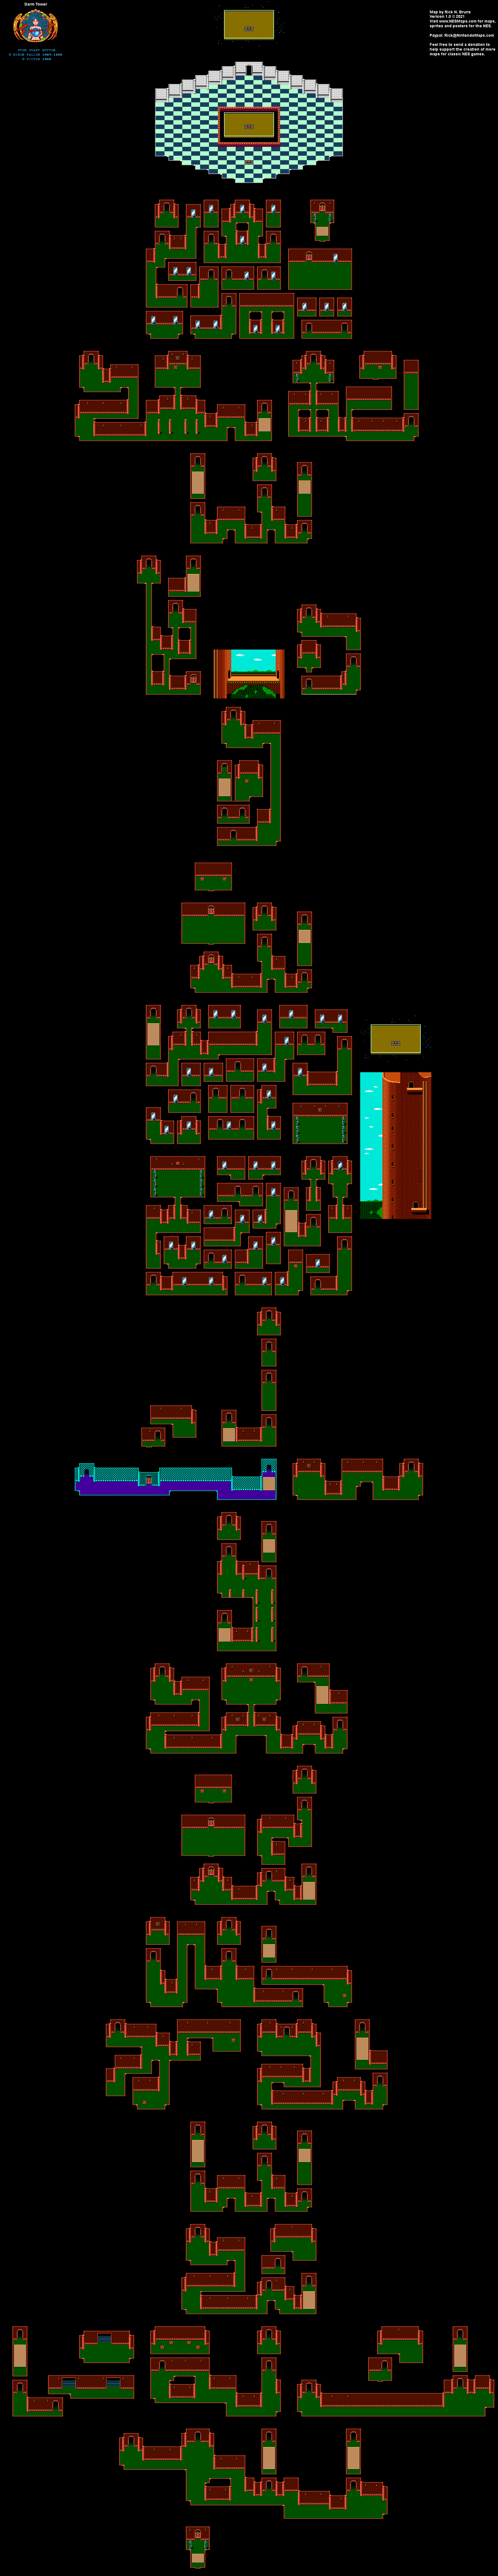 Ys 1 - Darm Tower - Nintendo NES Famicom Map BG